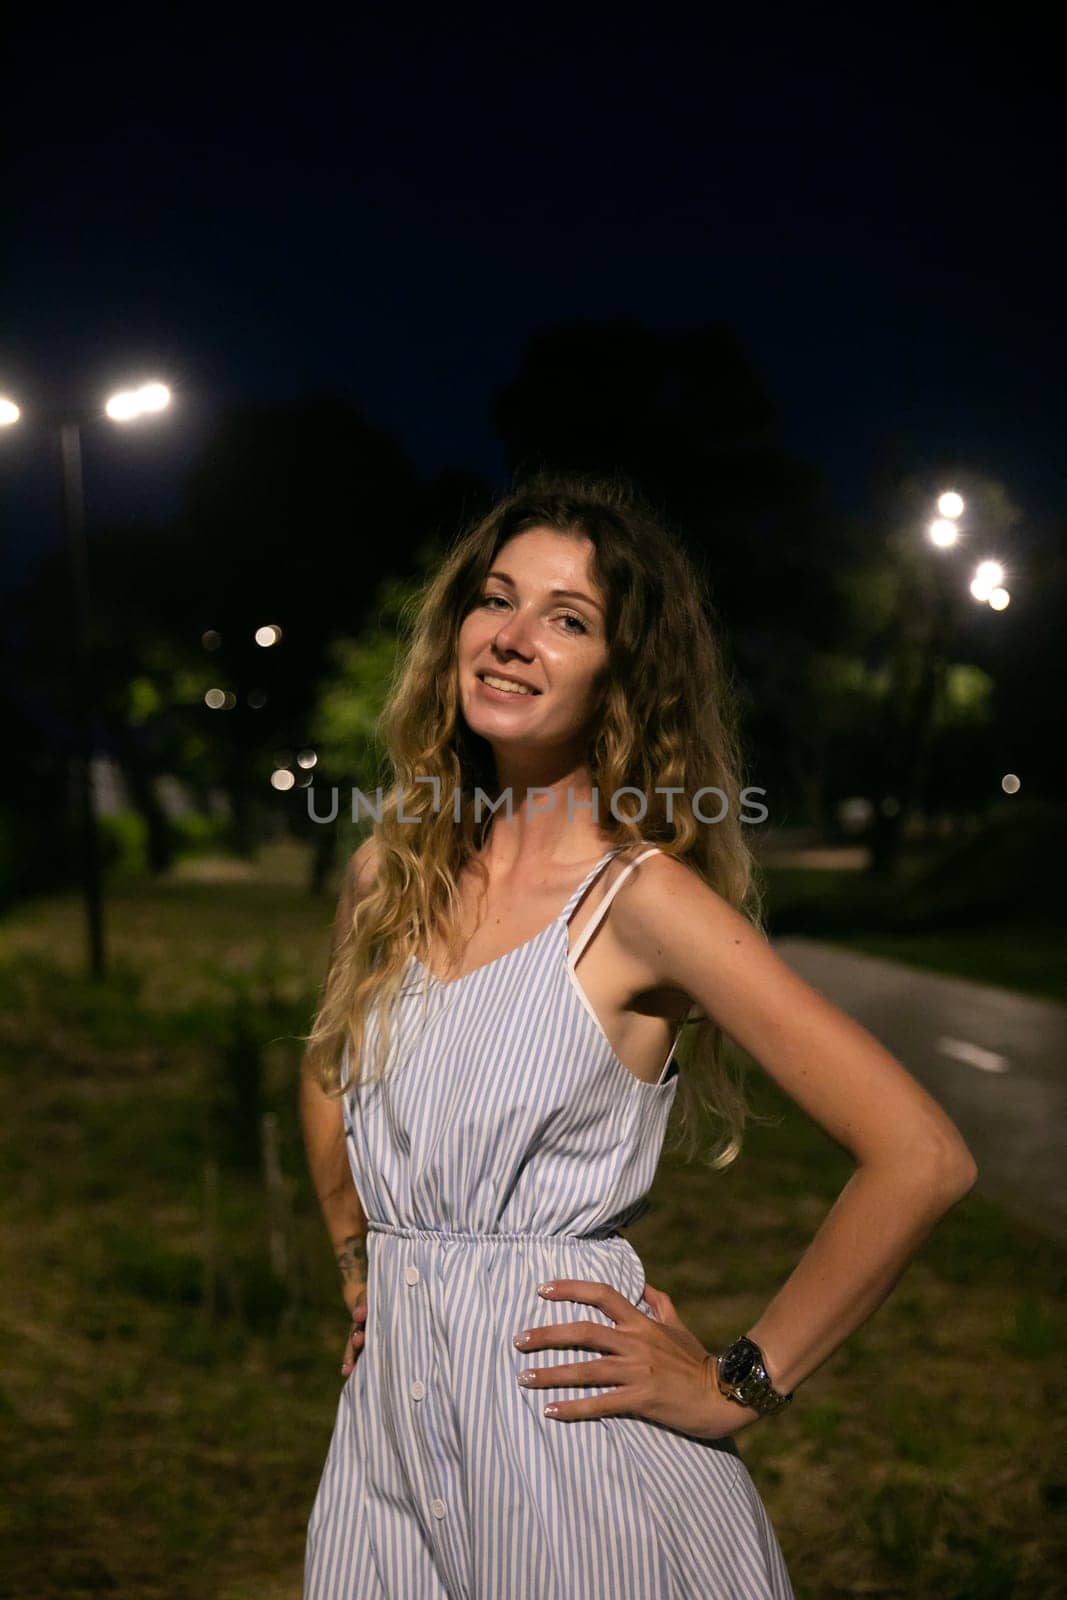 woman at night summer vacation walk trip by Simakov